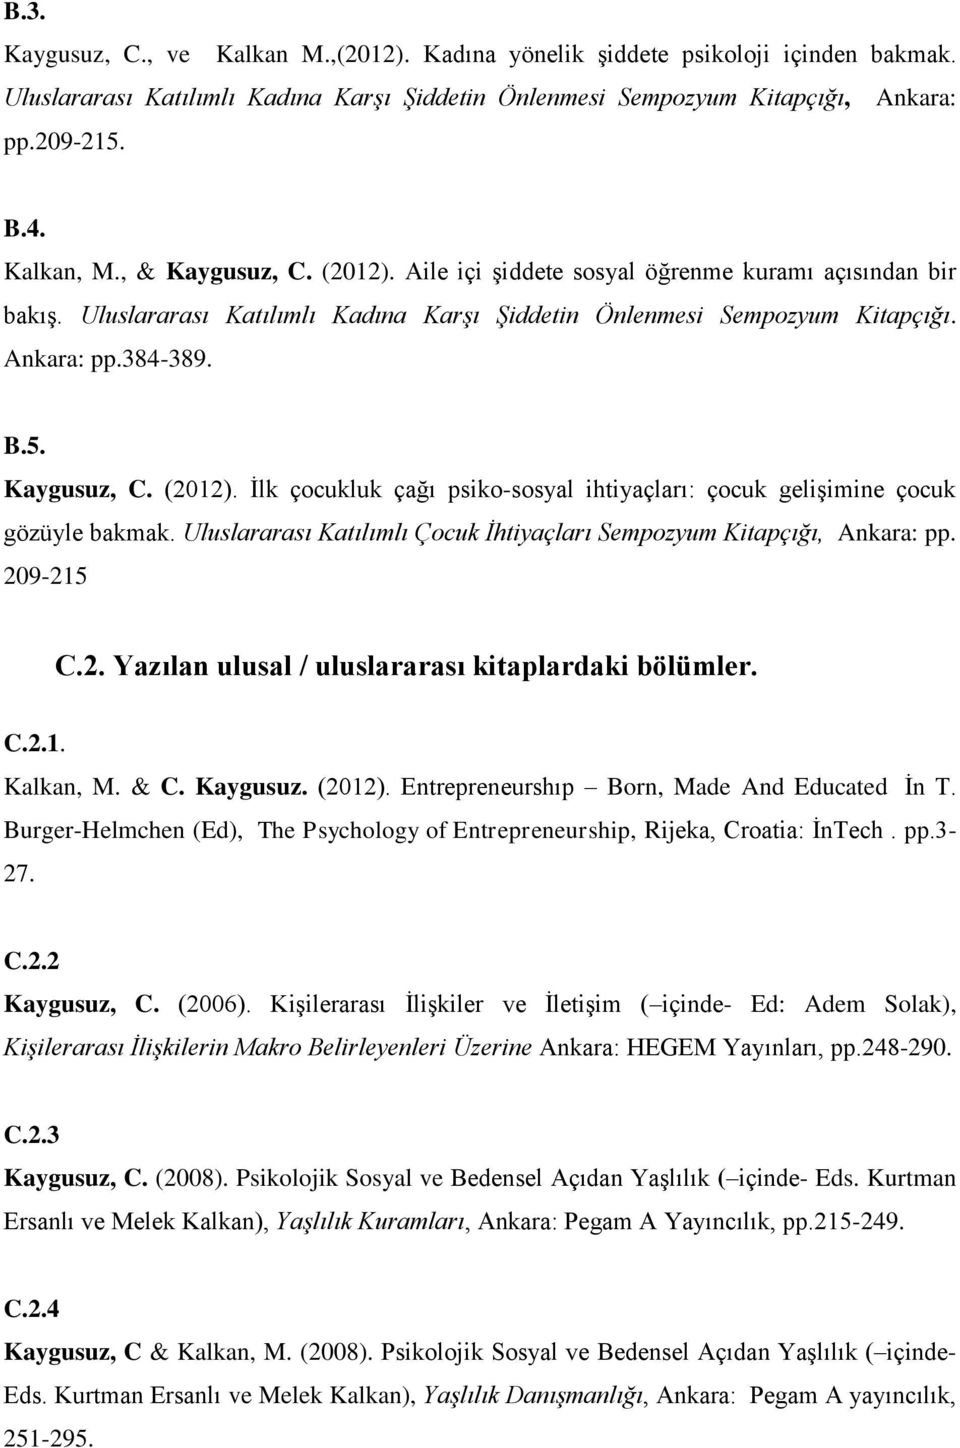 Uluslararası Katılımlı Çocuk İhtiyaçları Sempozyum Kitapçığı, Ankara: pp. 209-215 C.2. Yazılan ulusal / uluslararası kitaplardaki bölümler. C.2.1. Kalkan, M. & C. Kaygusuz. (2012).